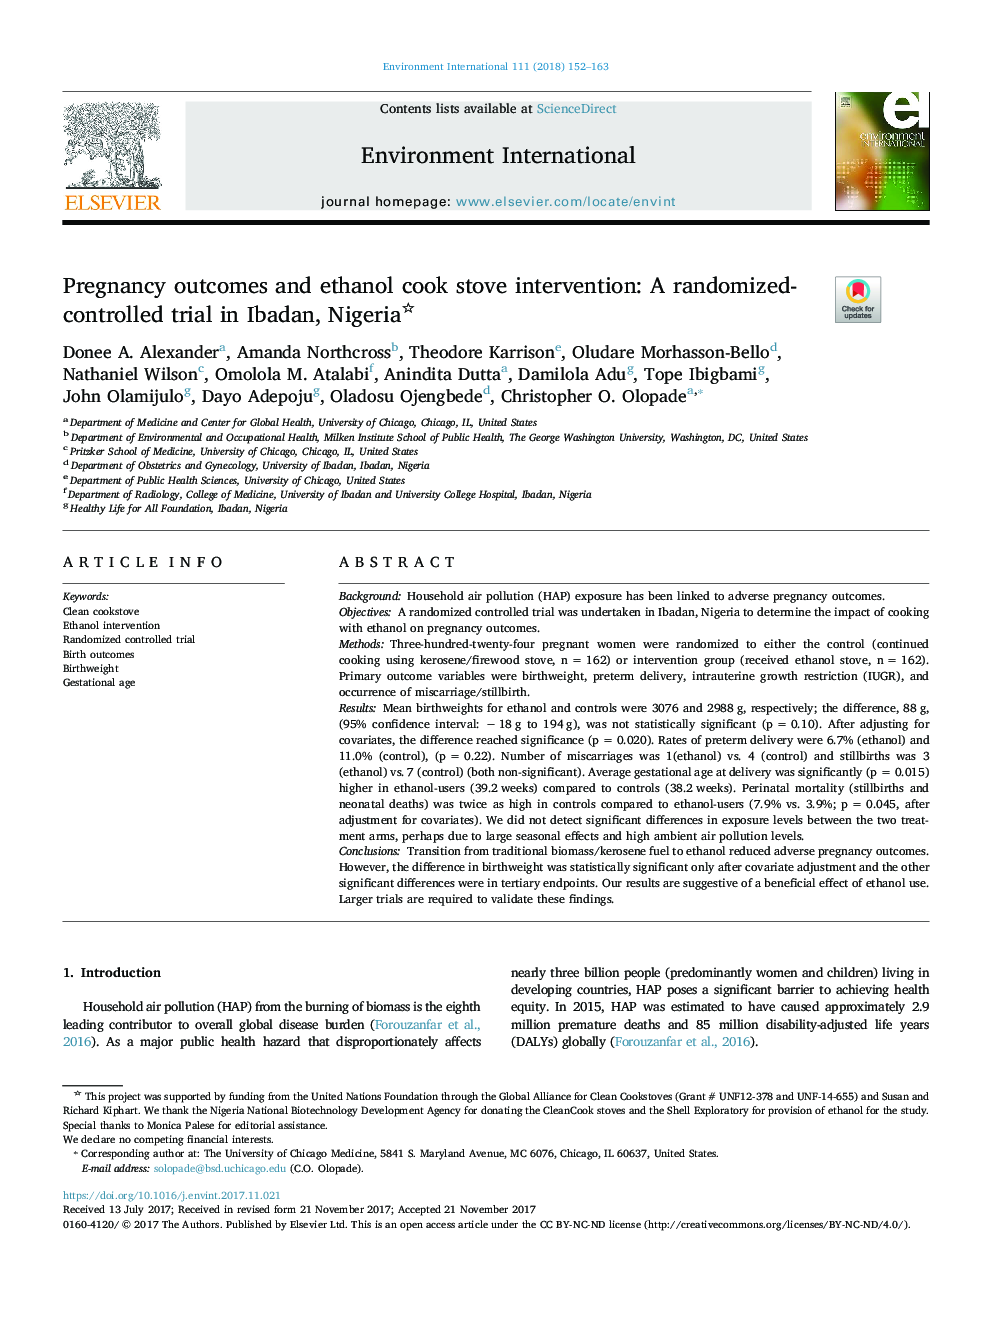 نتایج بارداری و مداخلات اجاق گاز اتانول آشپزی: یک کارآزمایی بالینی تصادفی شده در ایبادان، نیجریه 